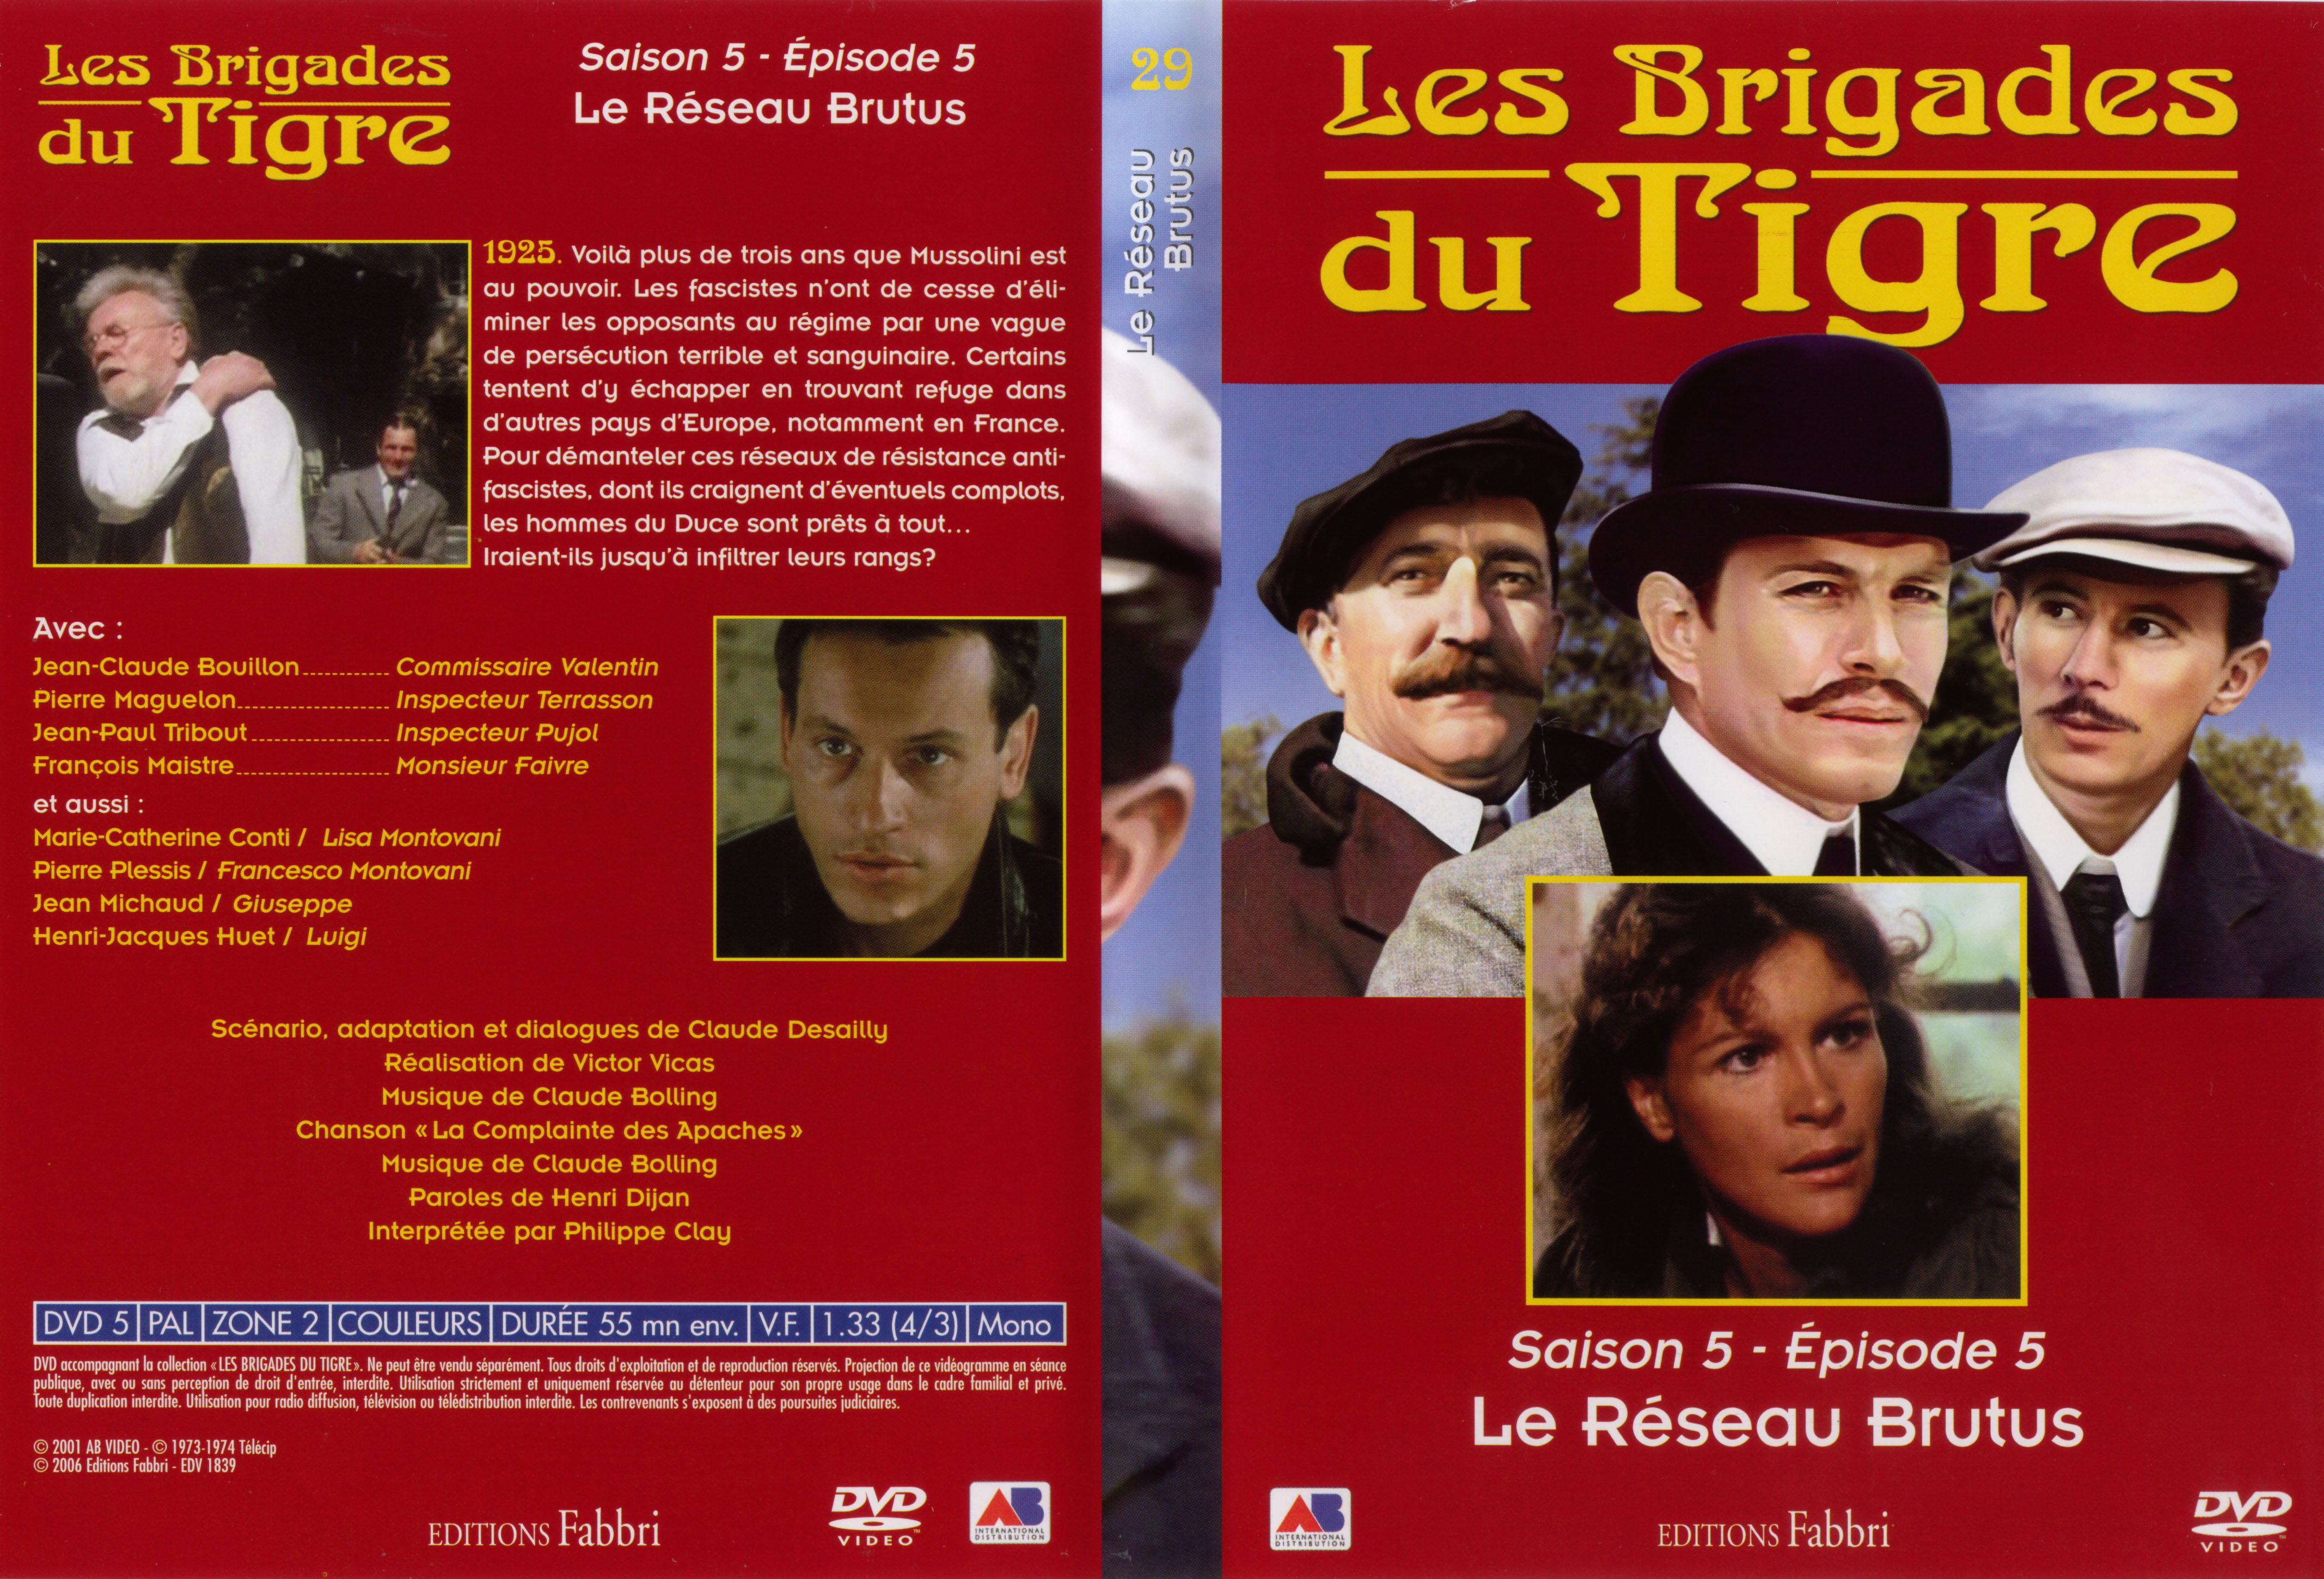 Jaquette DVD Les brigades du tigre saison 5 pisode 5